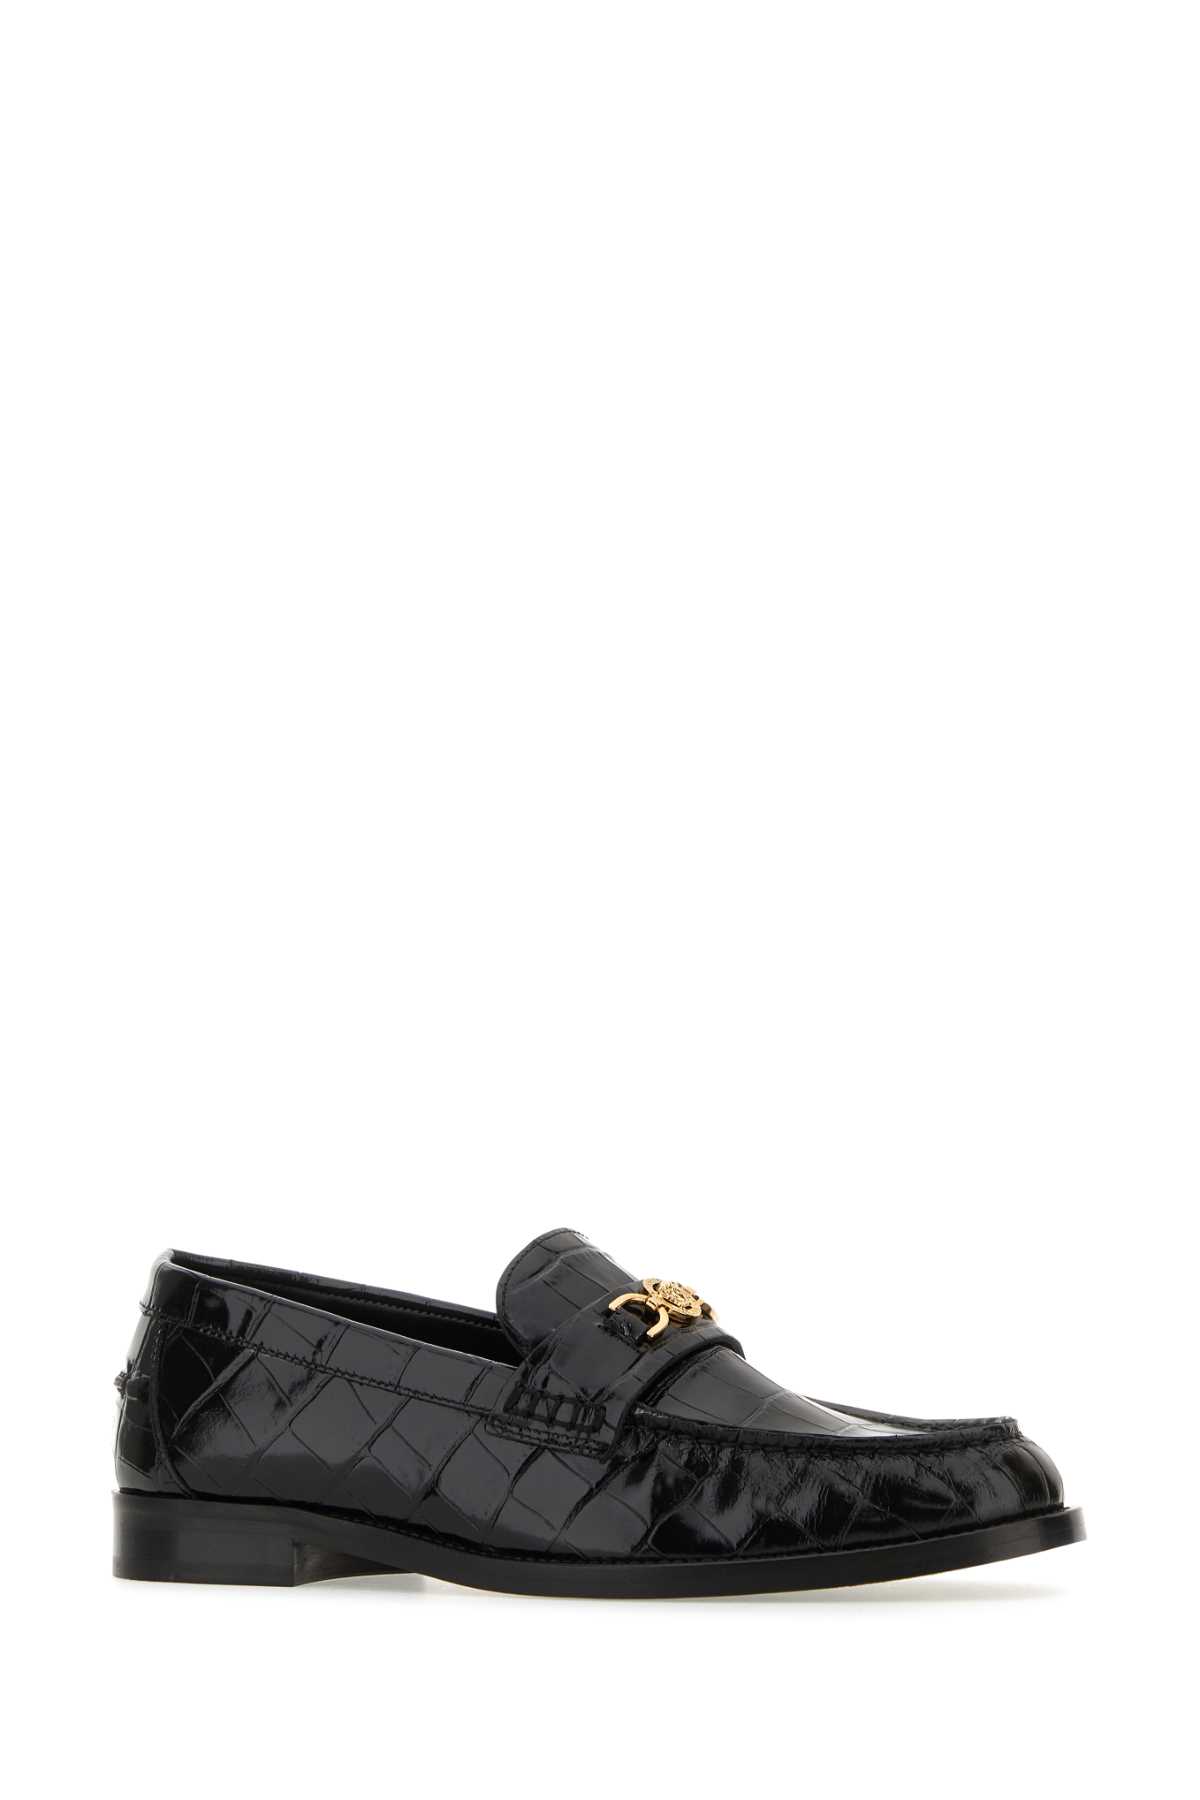 Shop Versace Black Leather Medusa 95 Loafers In 1b00v